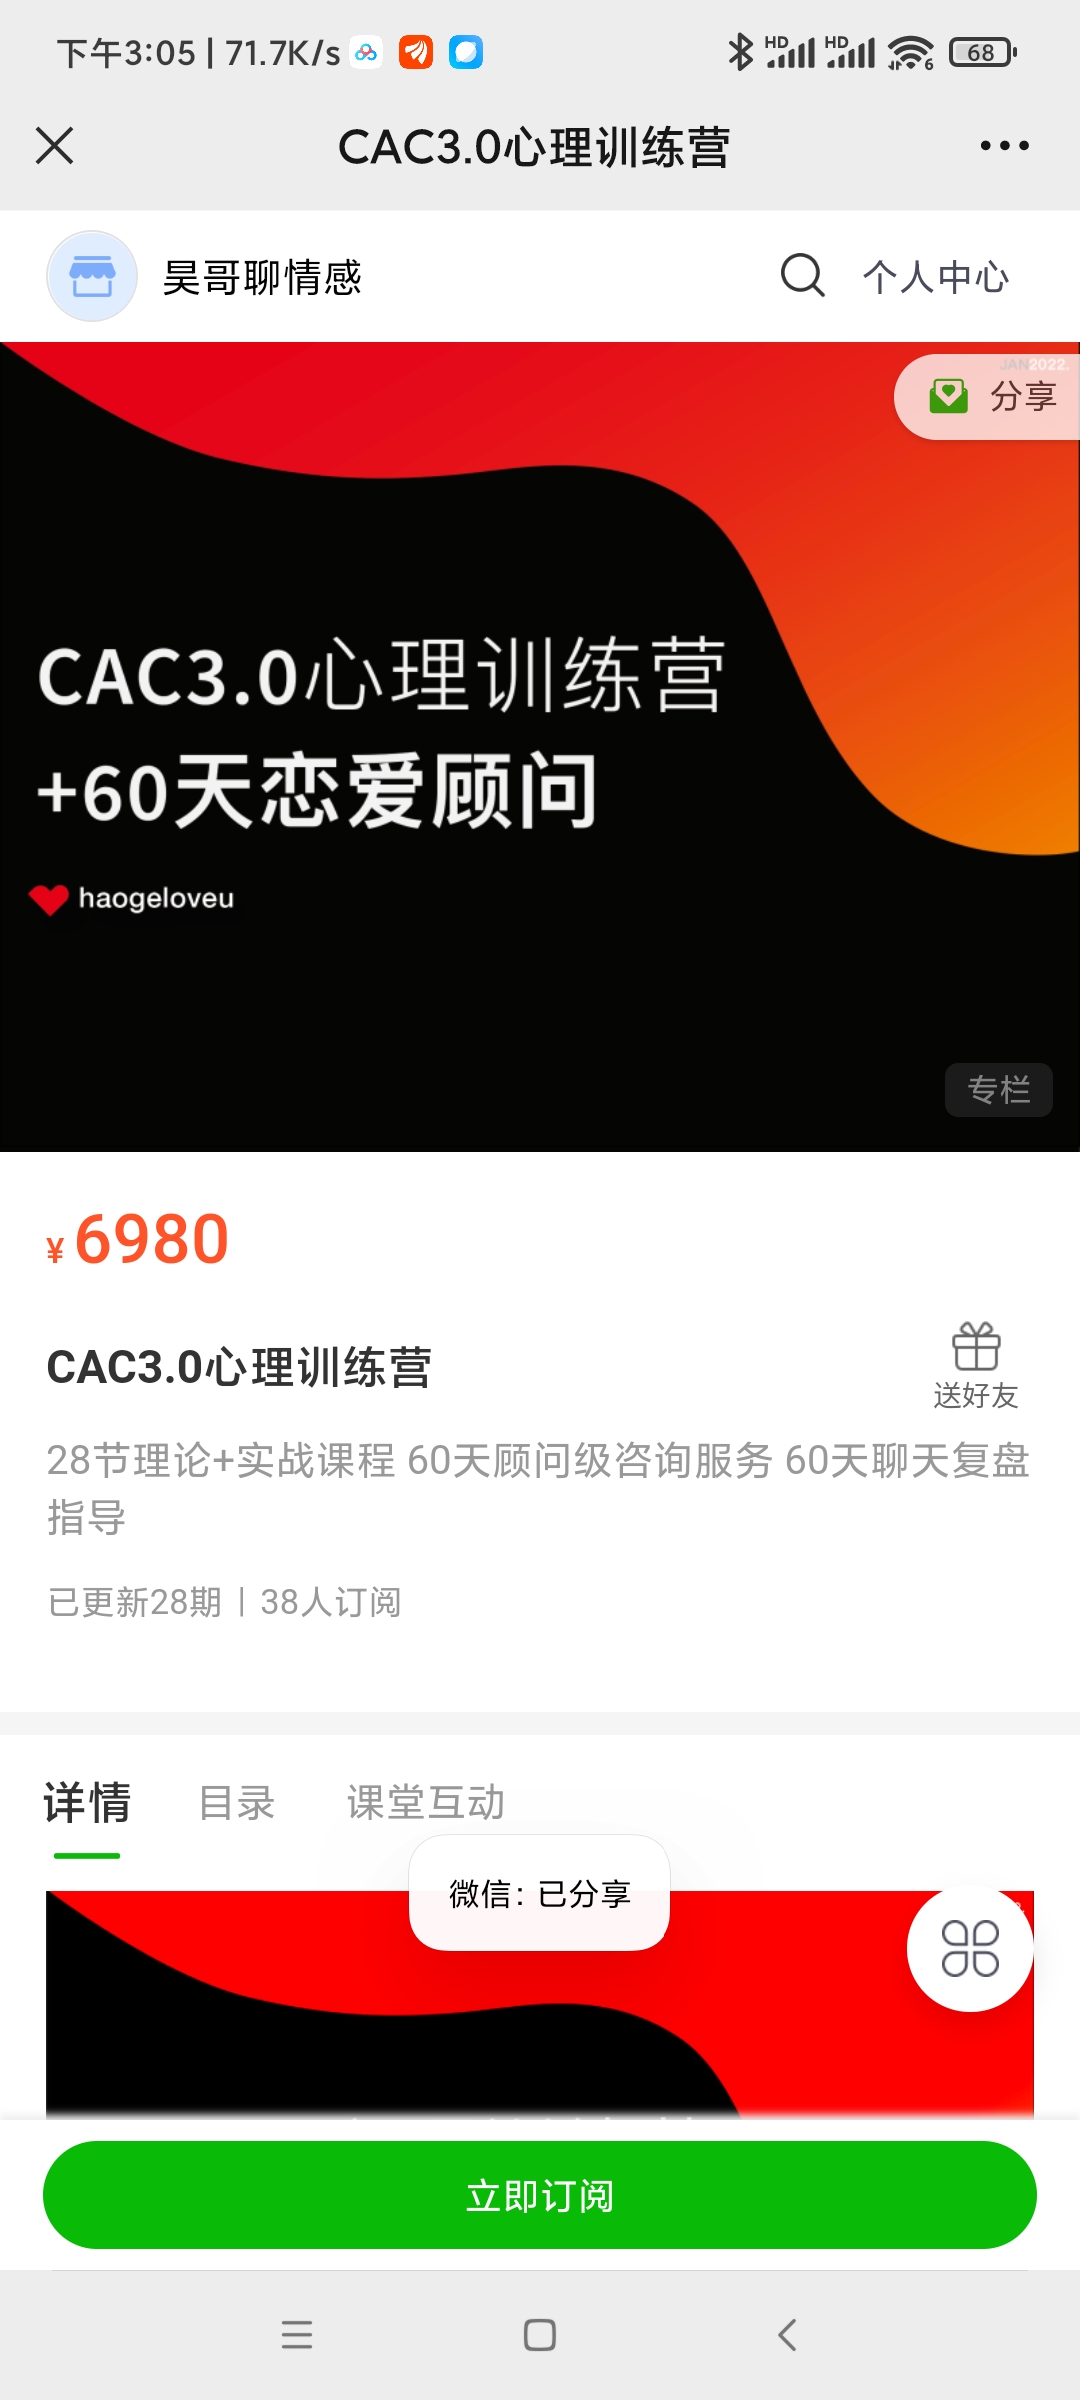 【更新】 昊哥《CAC 3.0 心理训练营》●情感